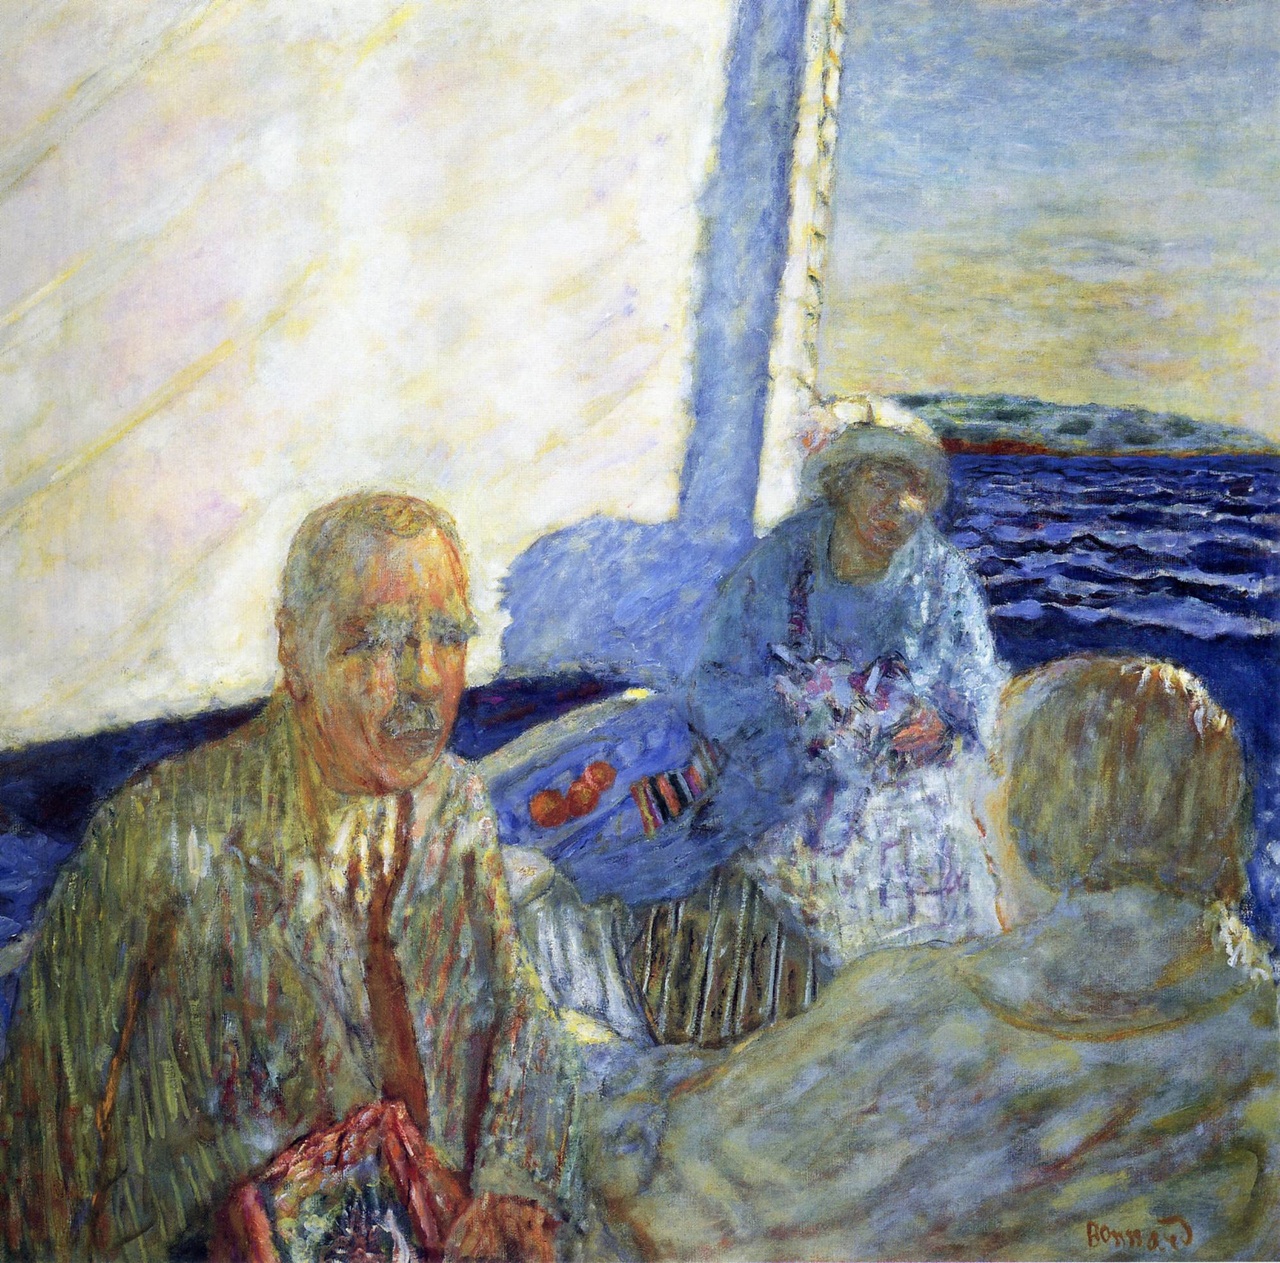 Pierre Bonnard, “Voyage en bateau” (Sailing Excursion), 1924